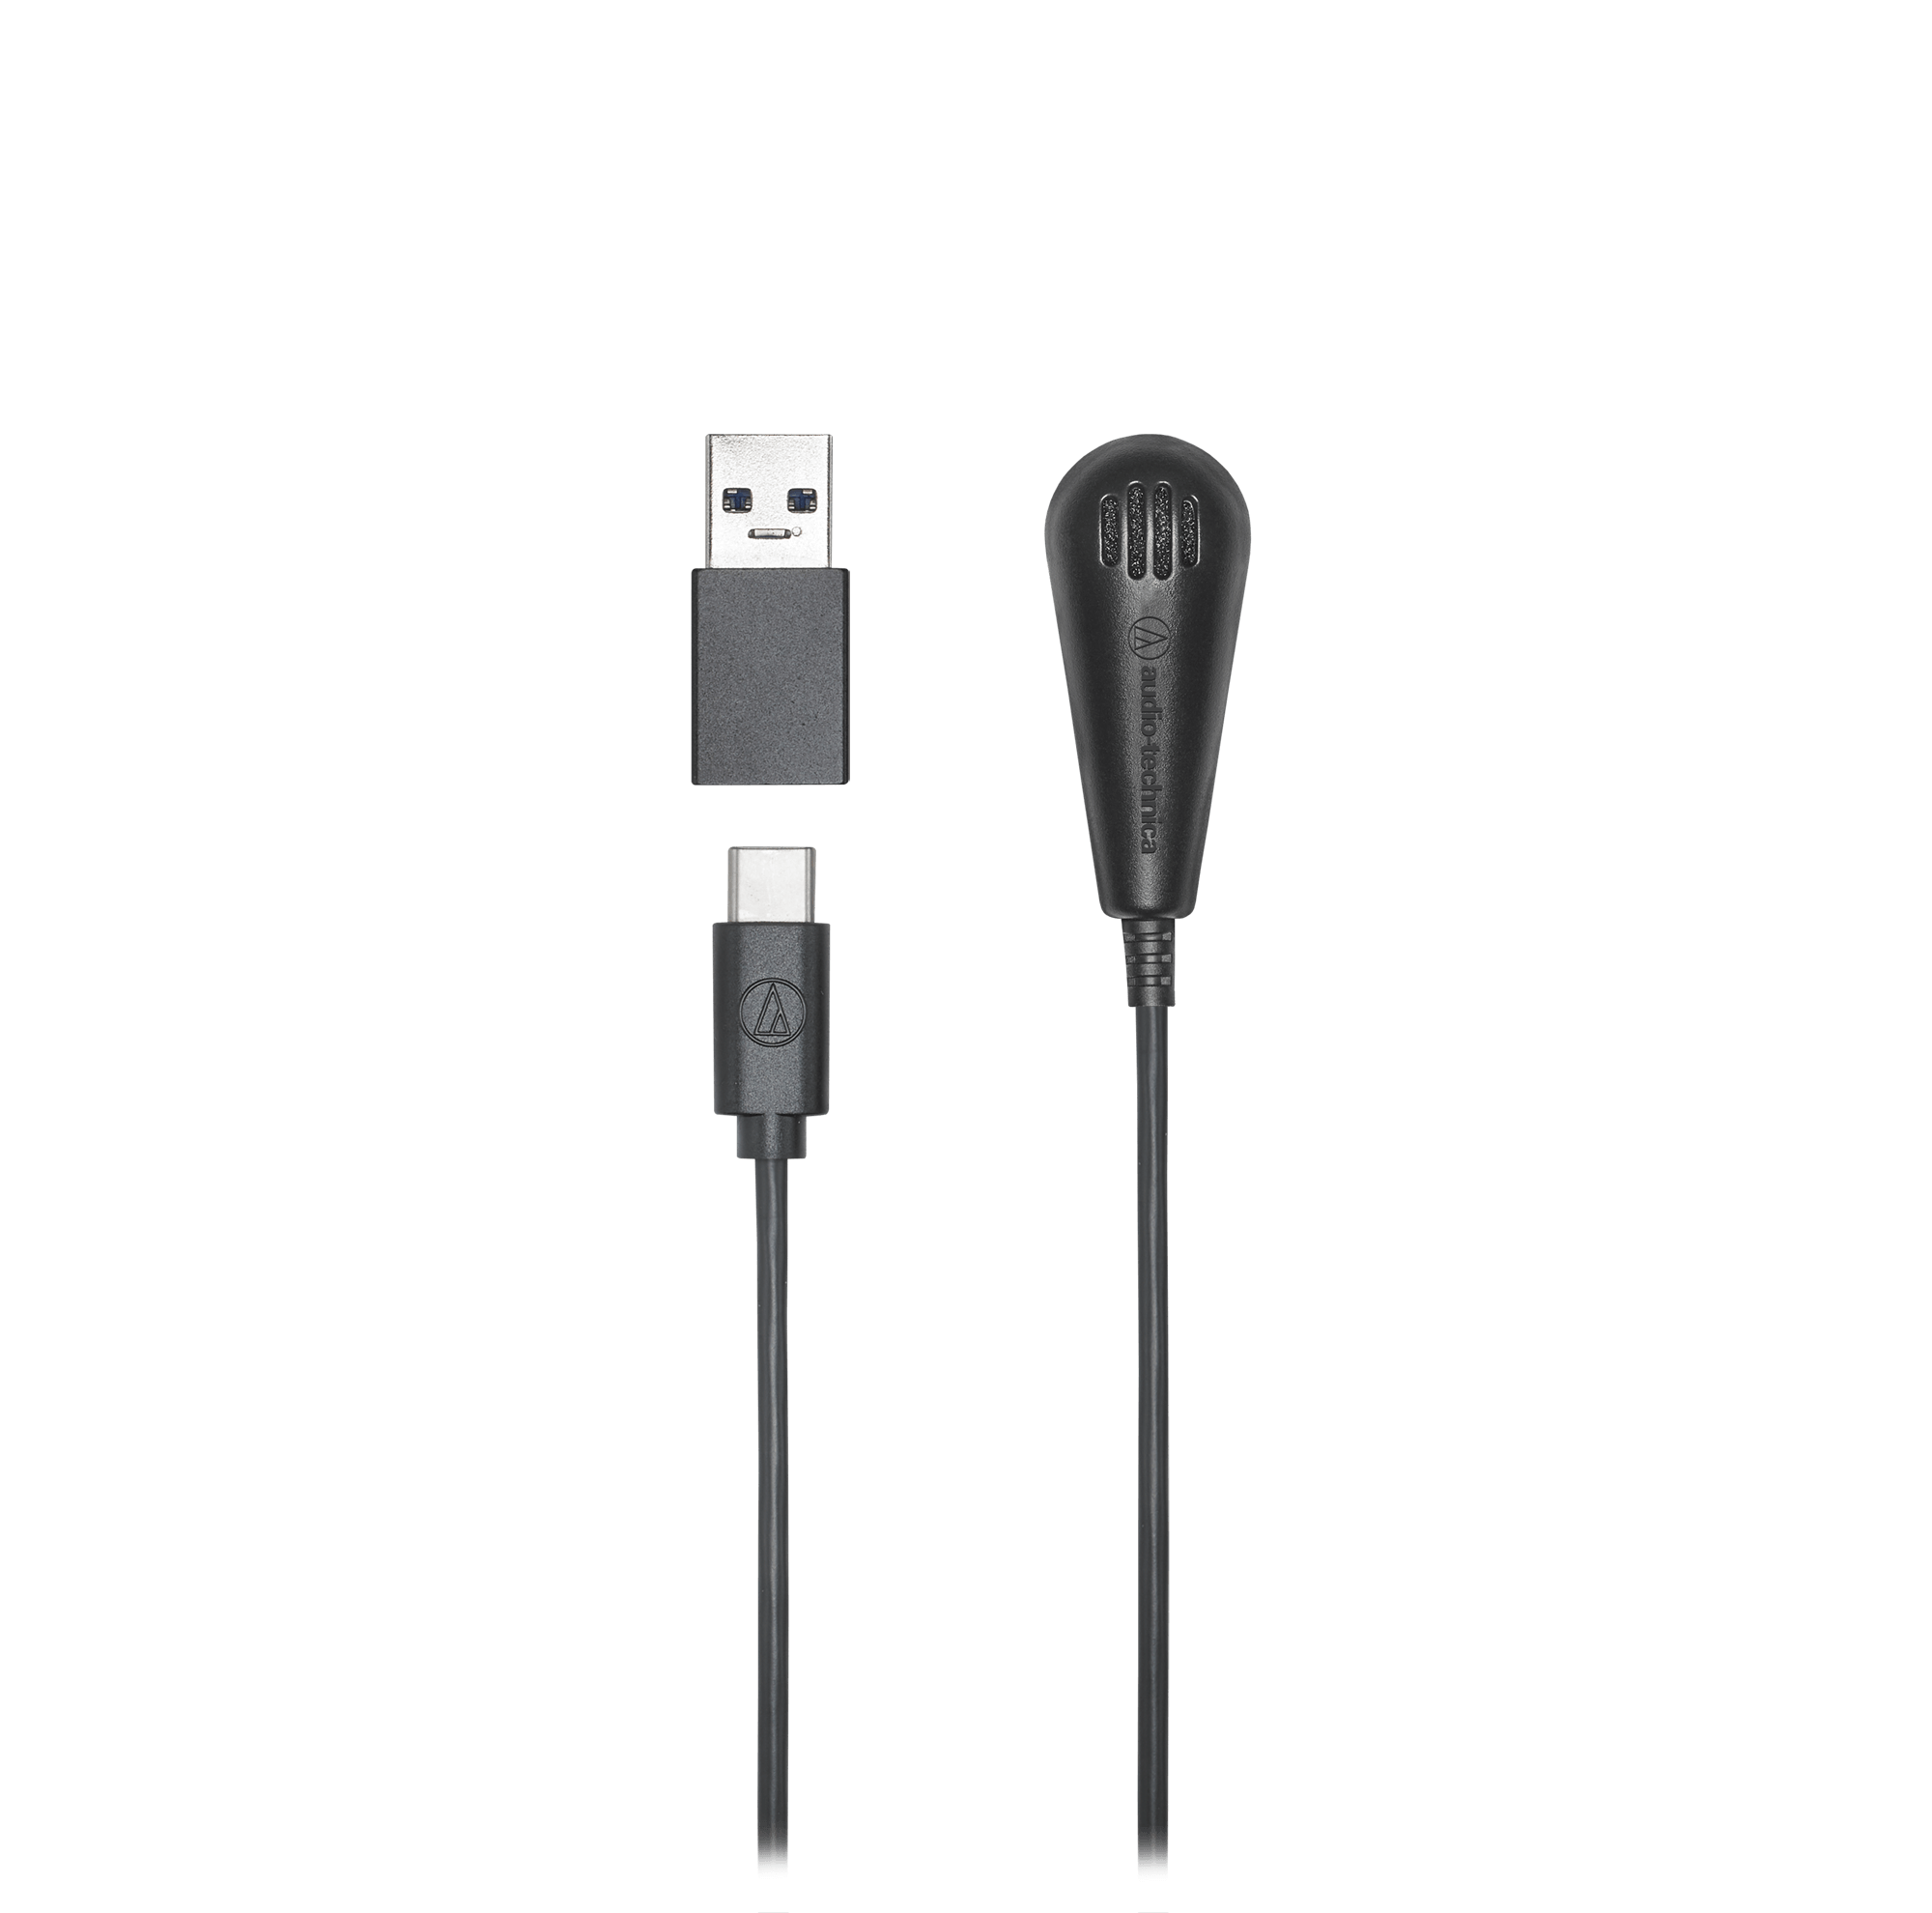 鐵三角 ATR4650-USB 數位 電容型 桌上型 領夾 全指向性 麥克風 | 金曲音響